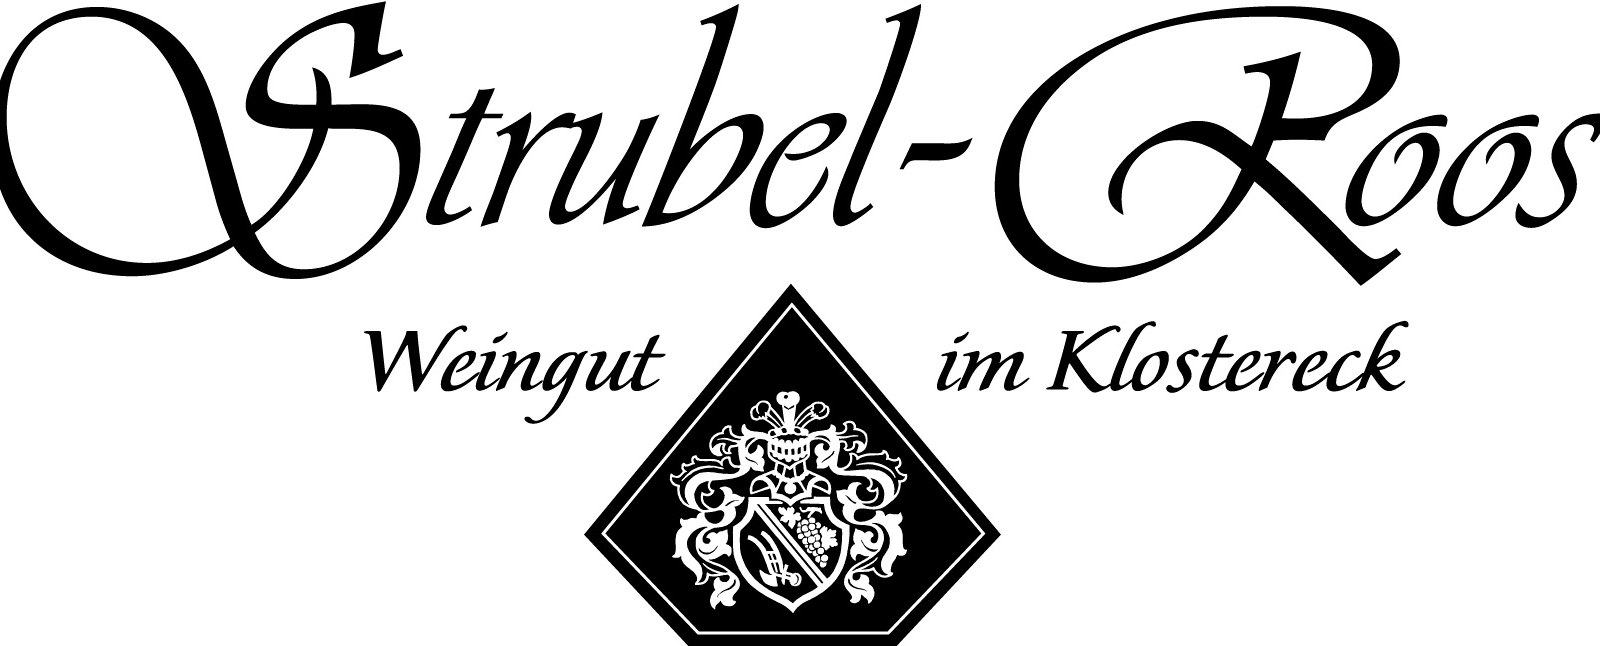 Weingut_Strubel-Roos_Logo, © Weingut Strubel-Roos